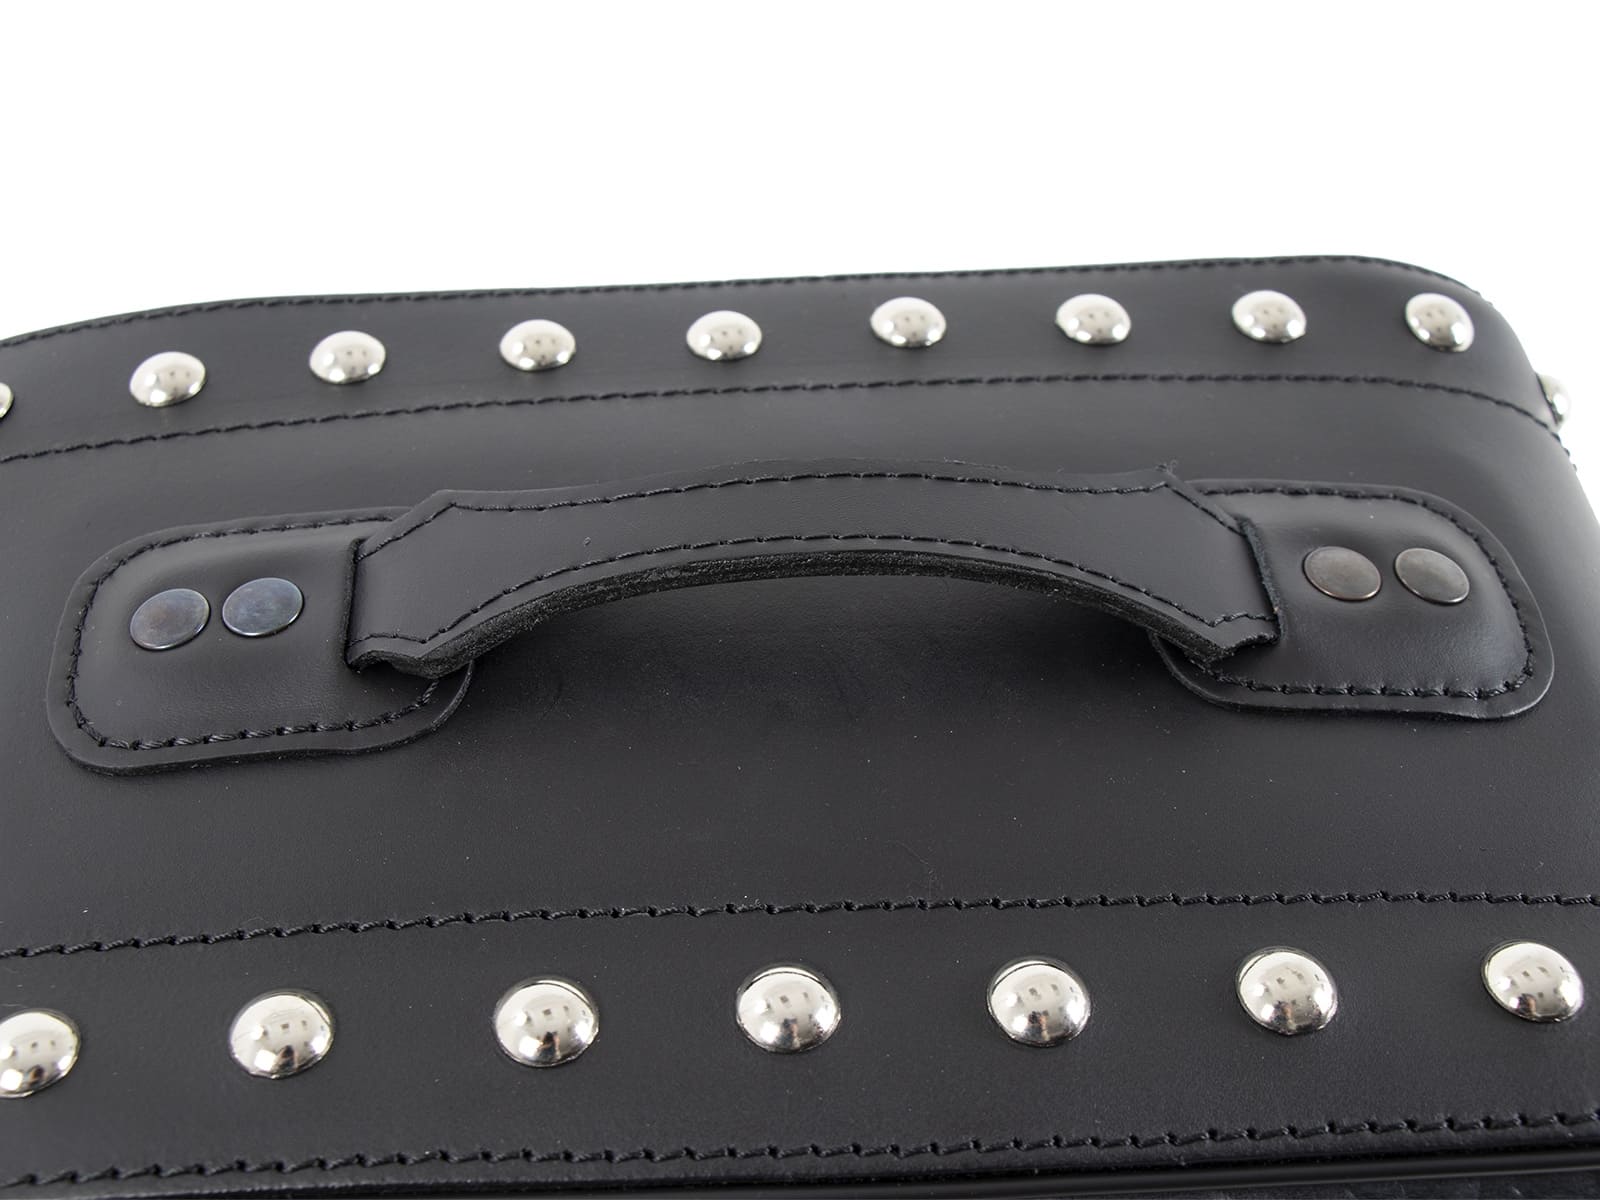 Ivory leather bag set black for C-Bow holder